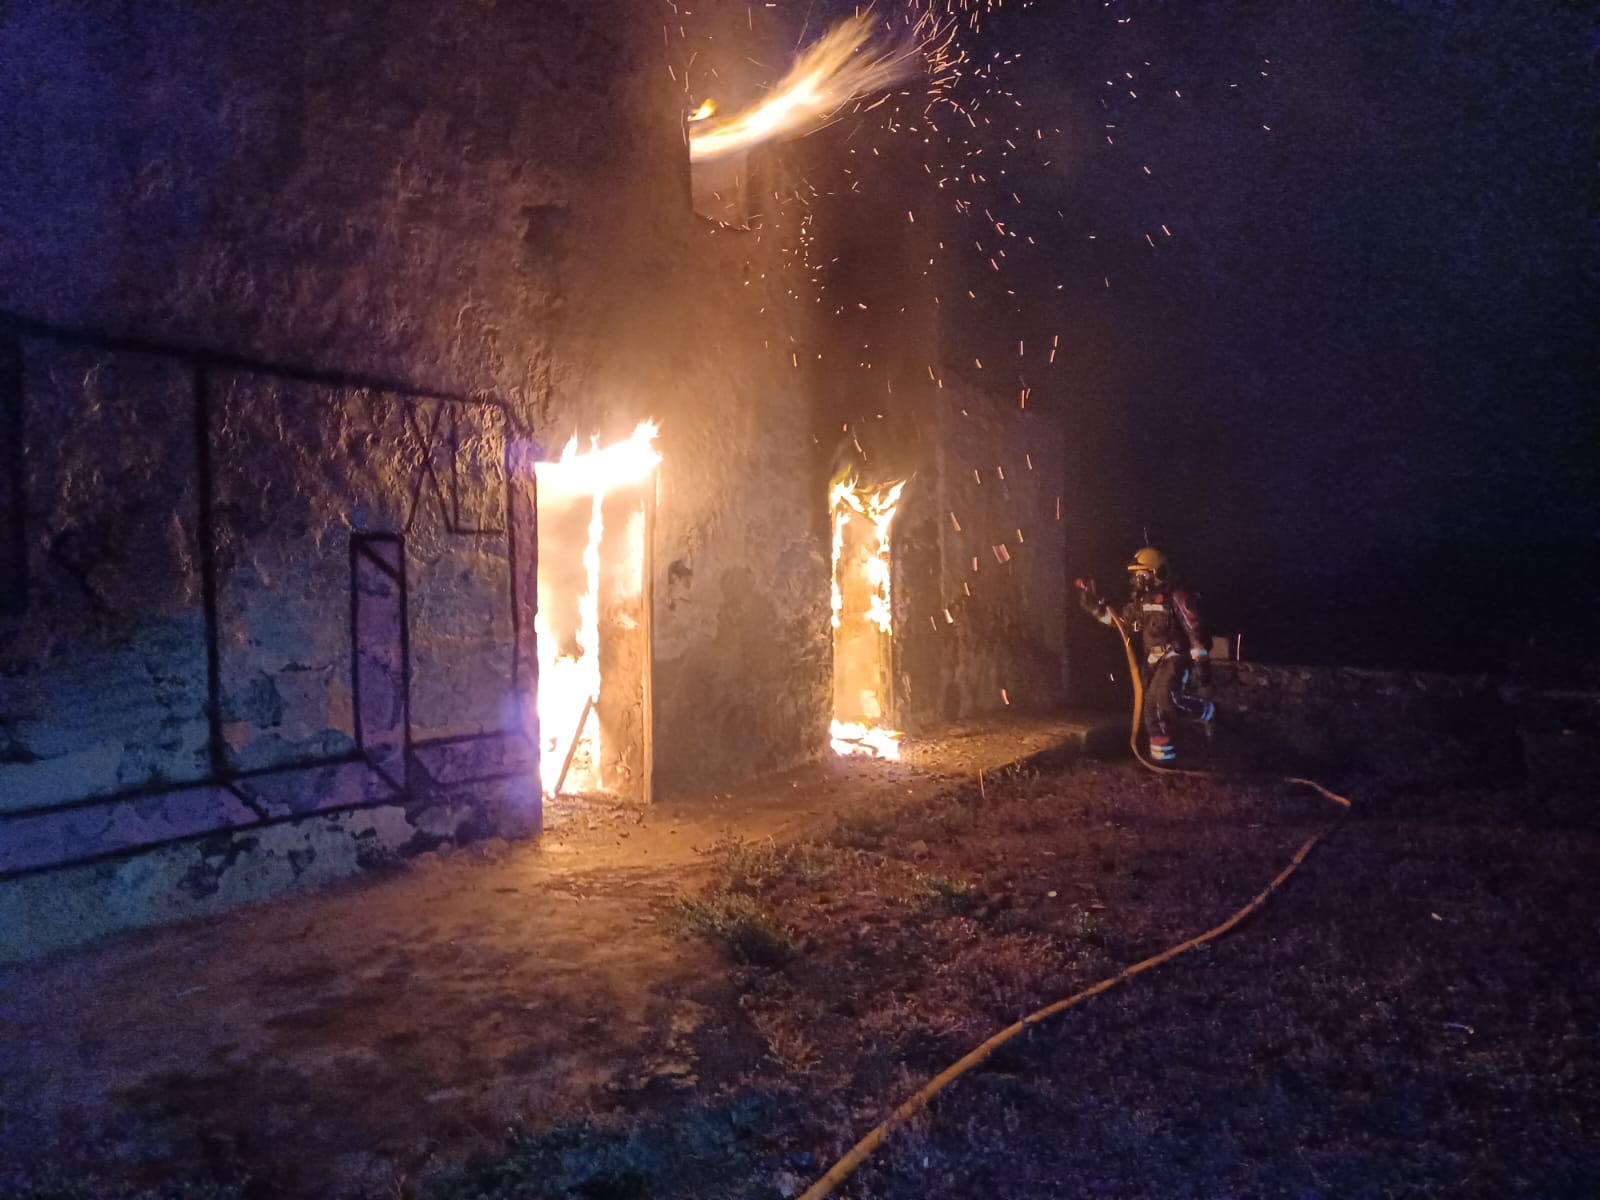 Bombero sofocando el incendio en la vivienda abandonada